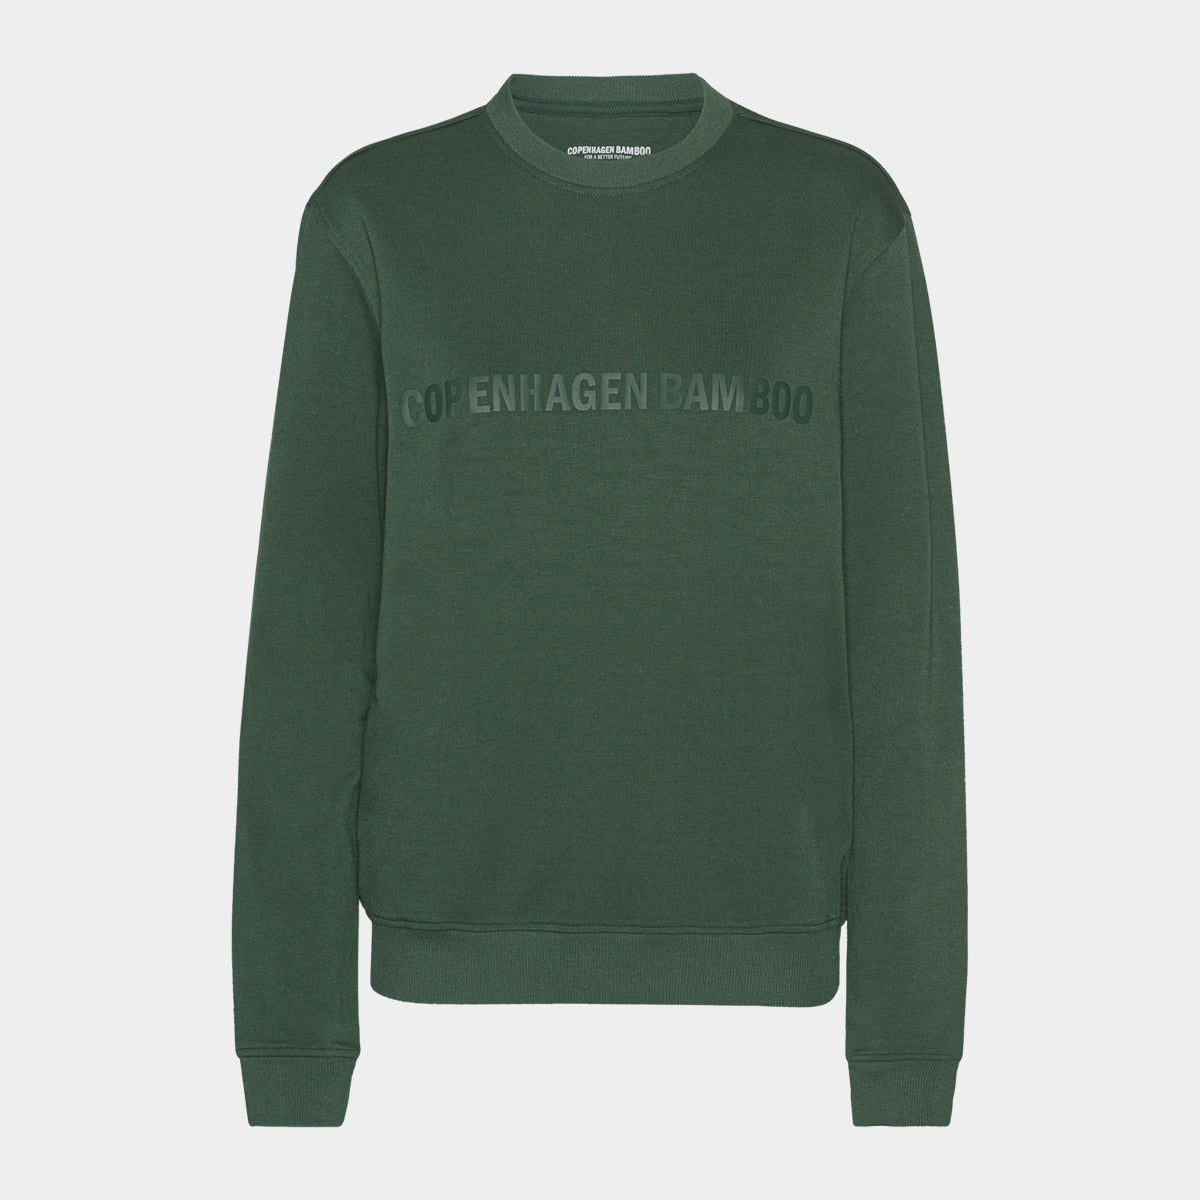 Se Grøn bambus sweatshirt til dame med logo fra Copenhagen Bamboo, XL hos Bambustøj.dk